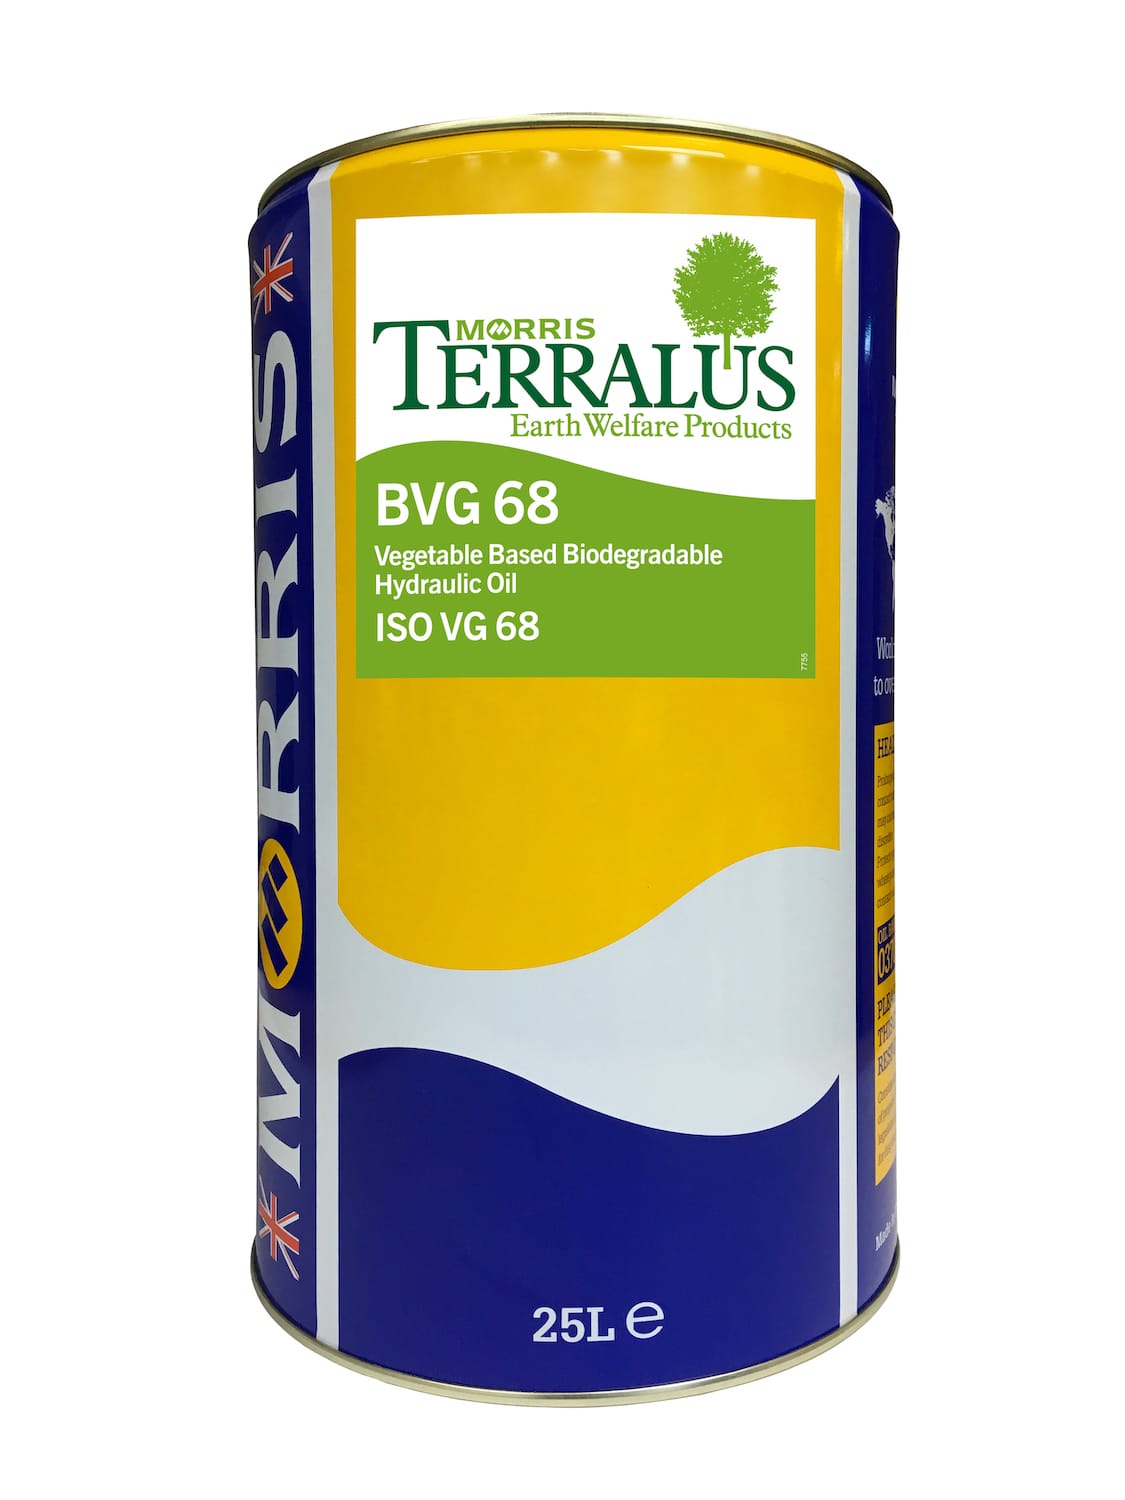 Terralus BVG 68